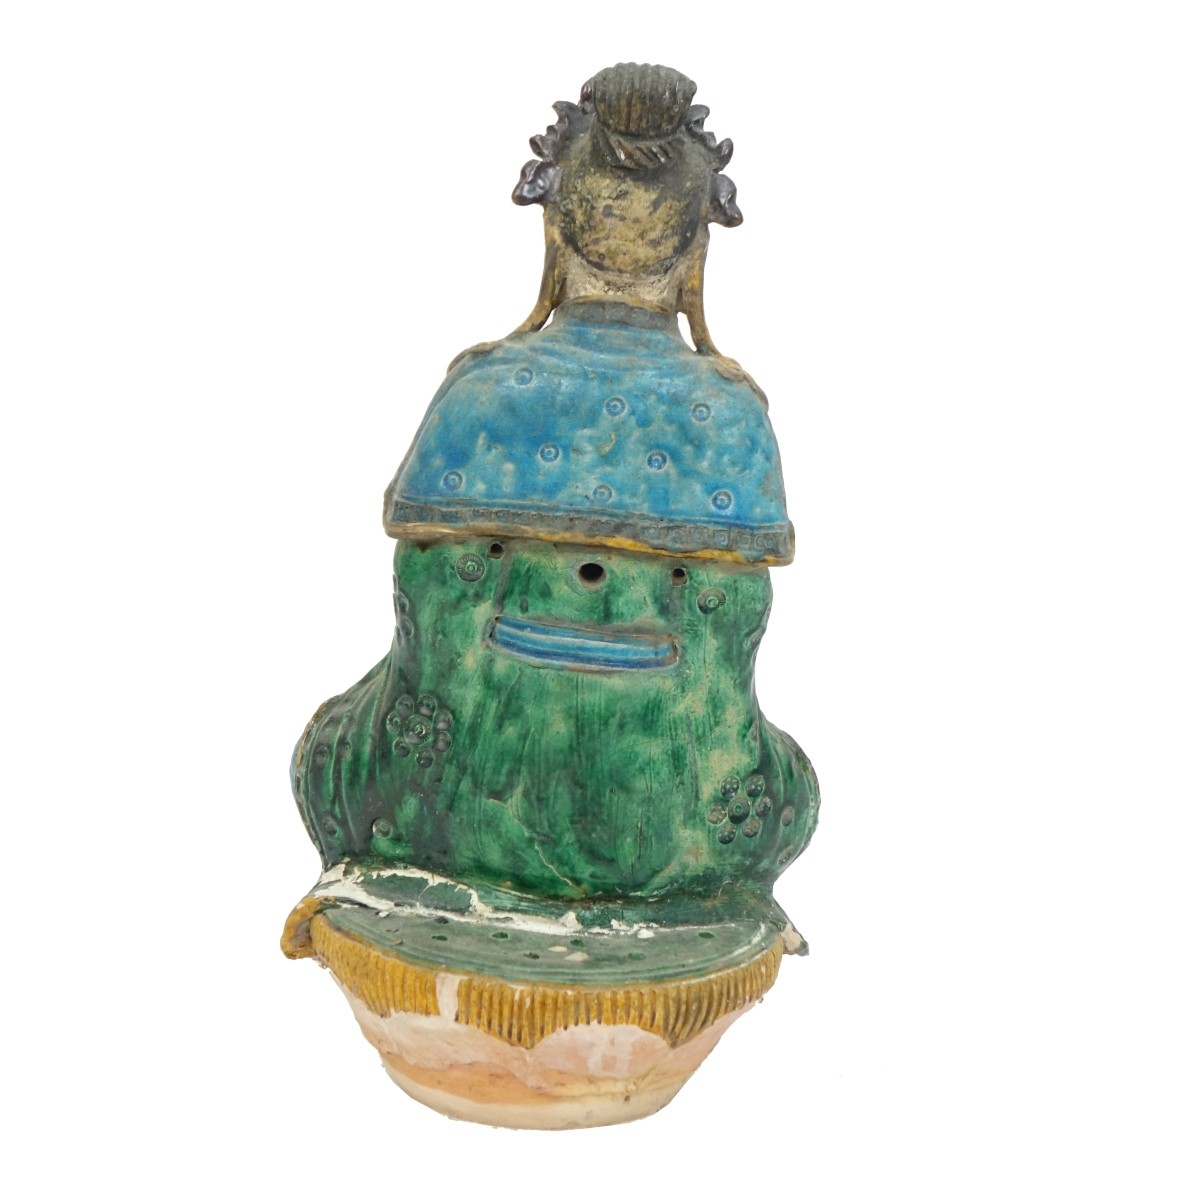 Antique Chinese Glazed Terracotta Buddha